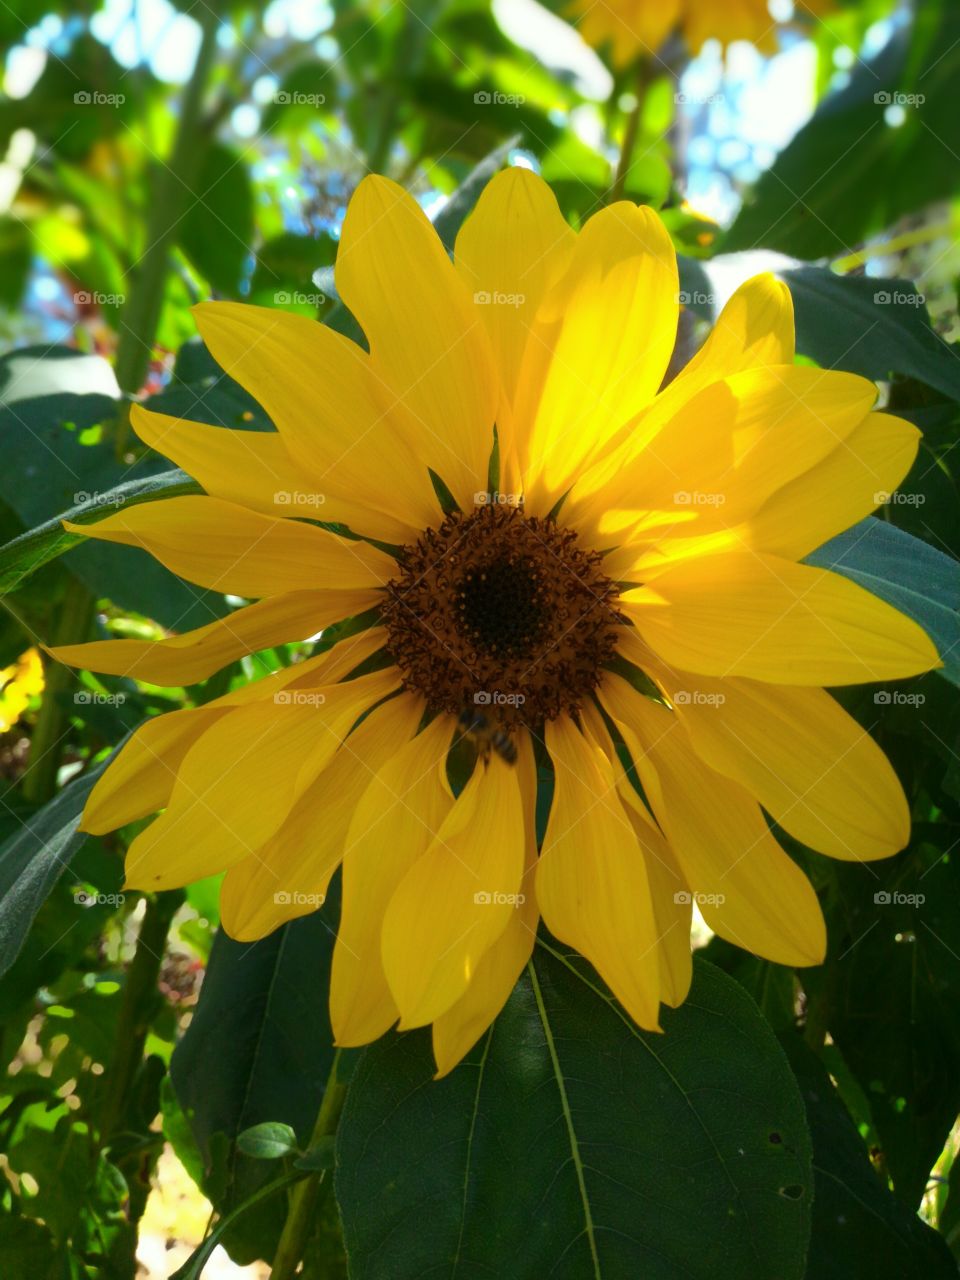 smile to me dearest sunflower 🌻